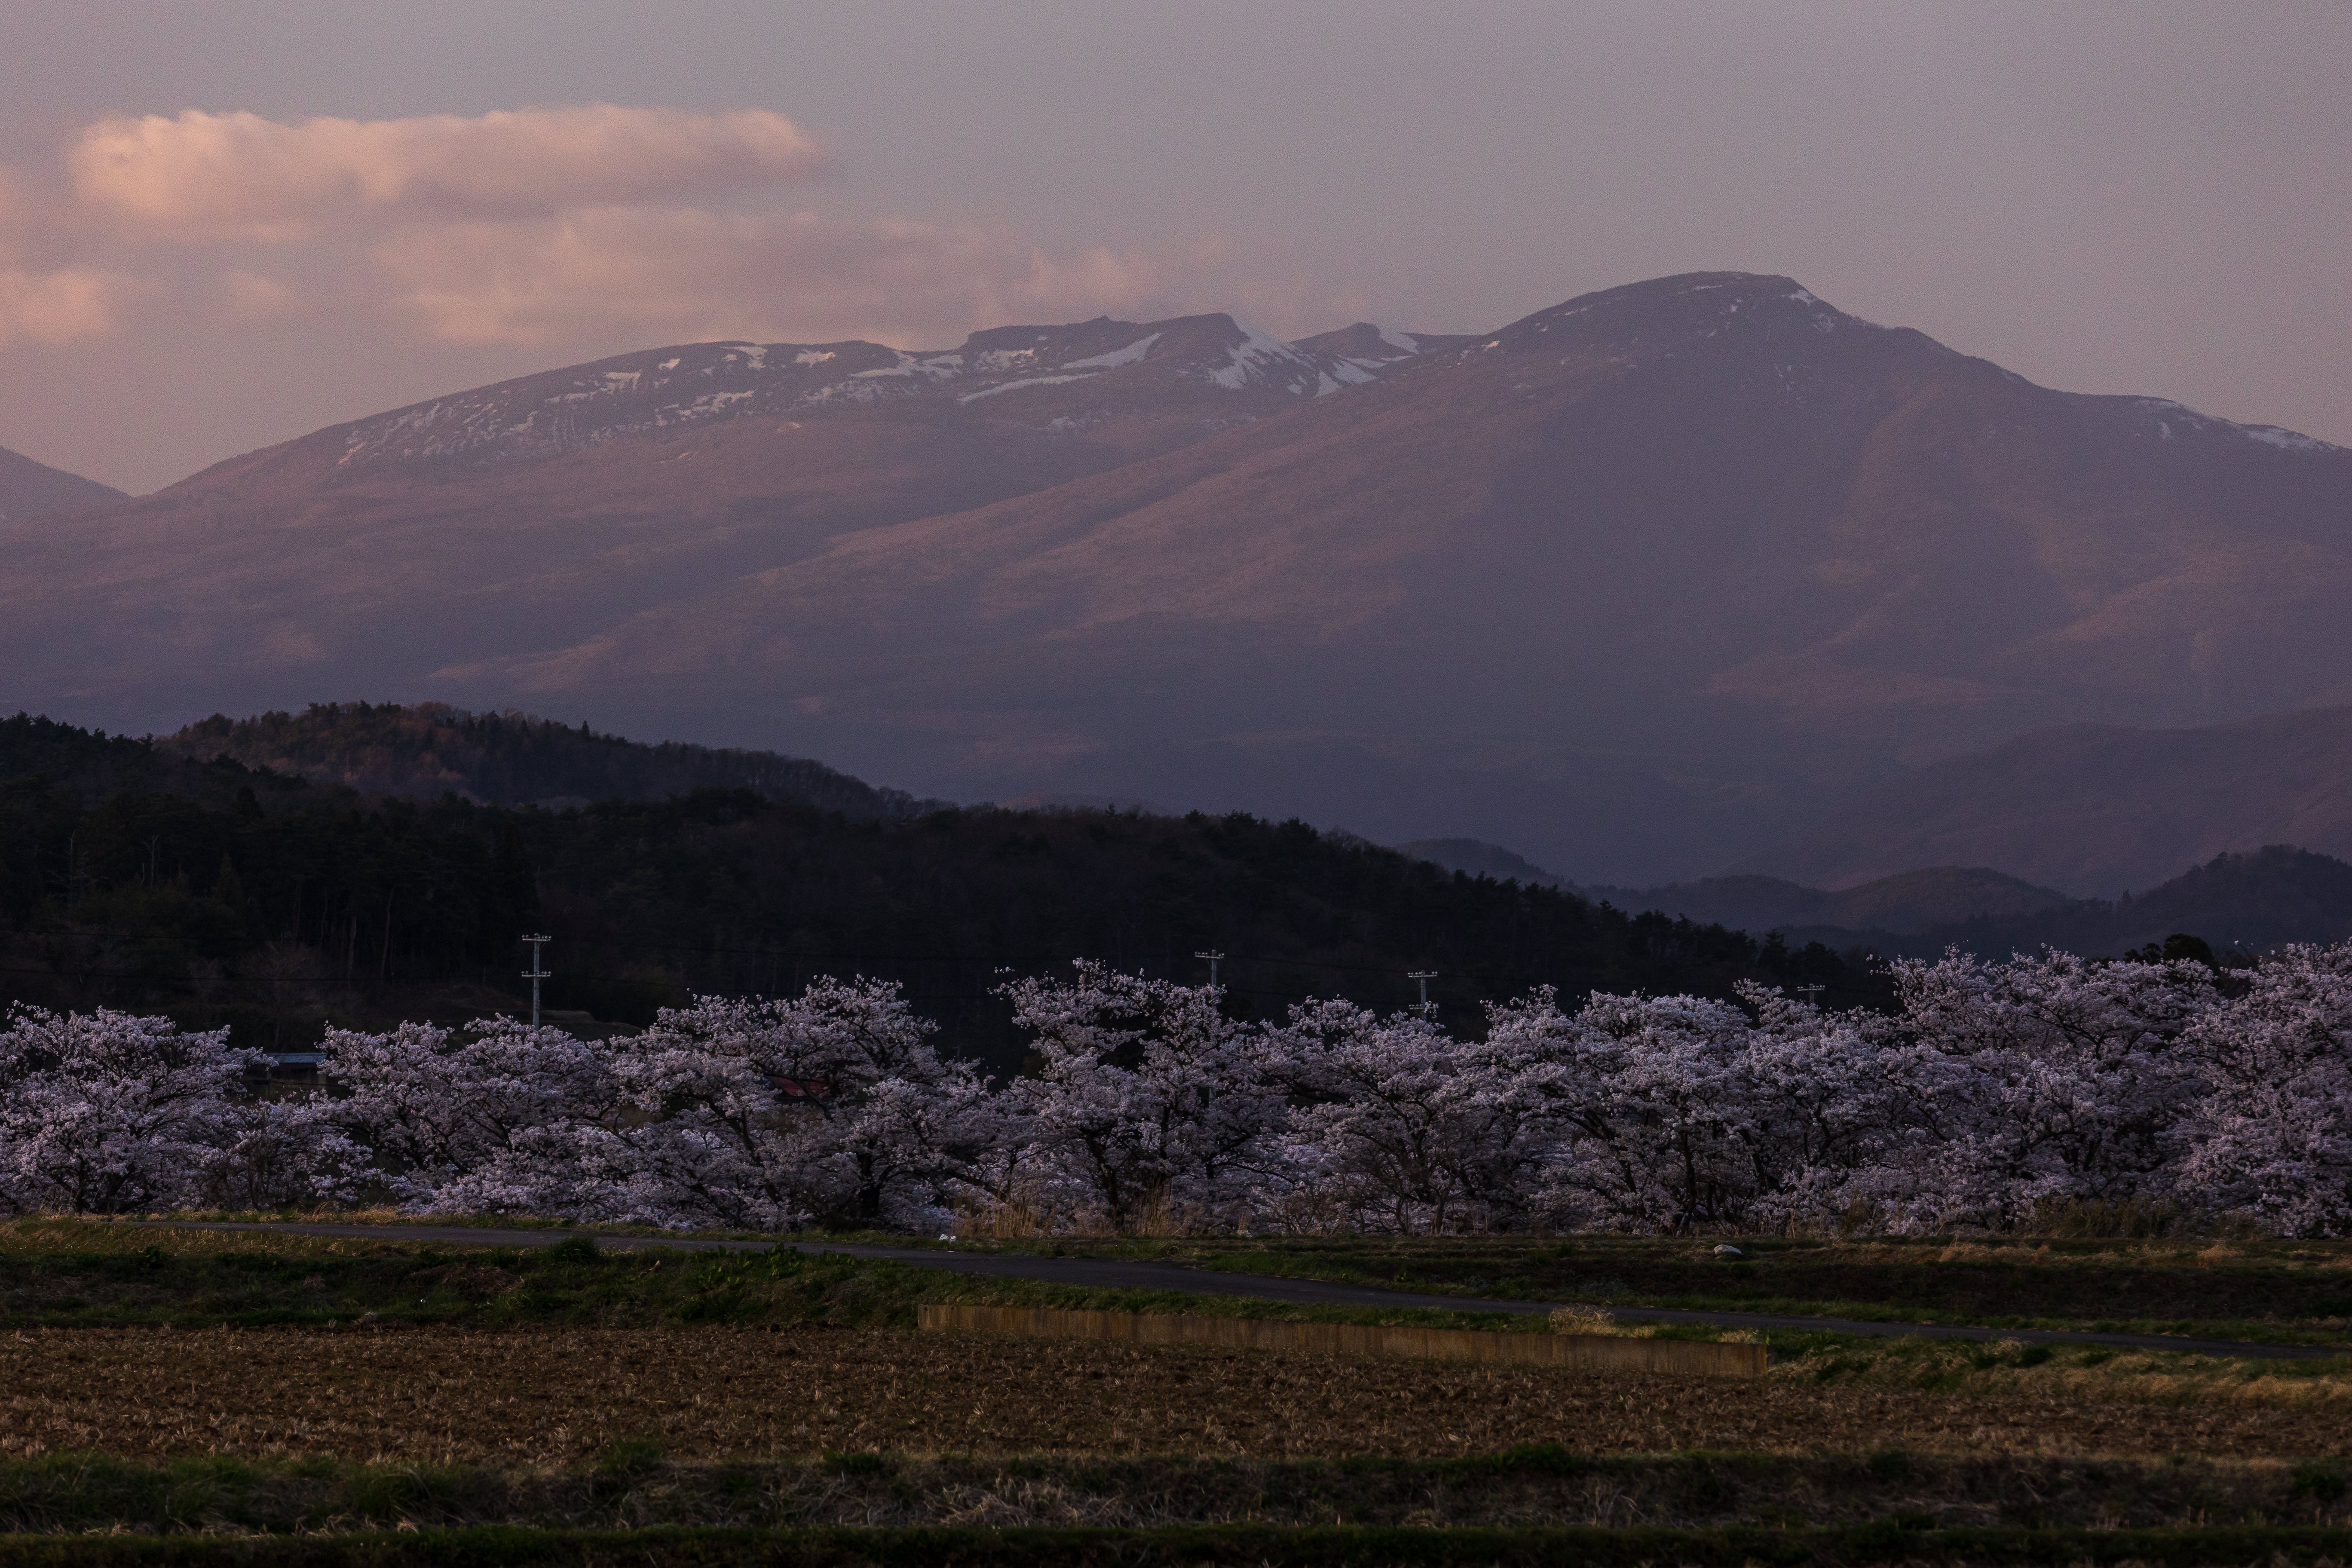 日没後の田んぼと笹原川の千本桜と安達太良山の無料写真素材 - ID 